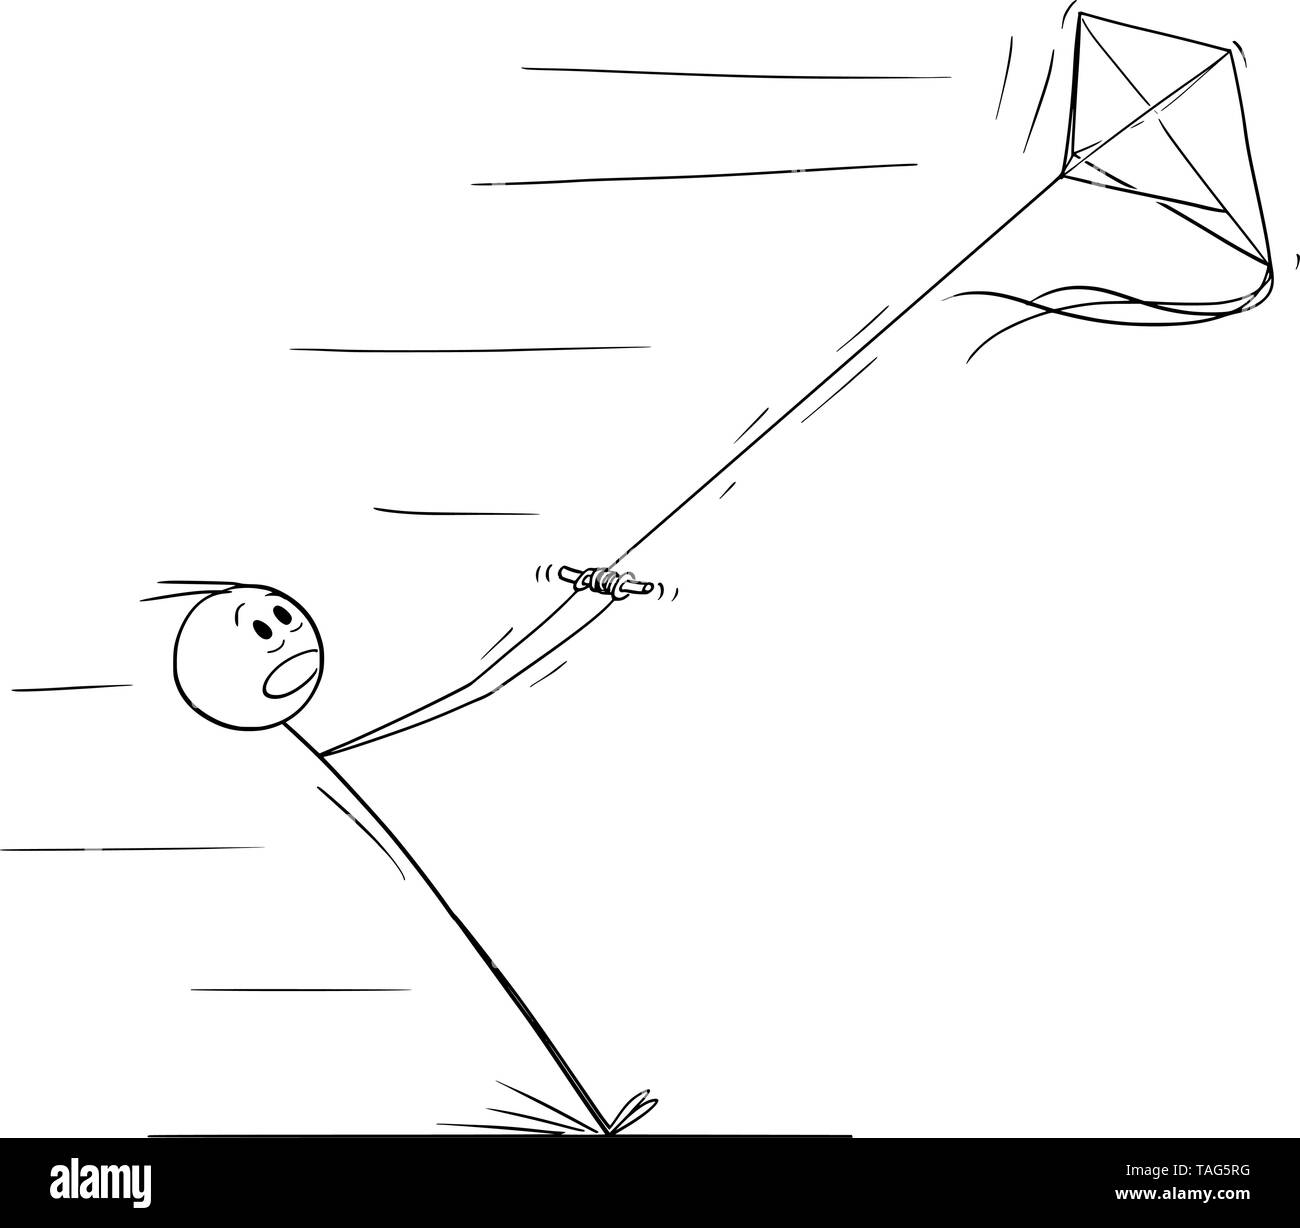 Vector cartoon stick figure dessin illustration conceptuelle de man flying kite et s'écarta en vent fort. Illustration de Vecteur